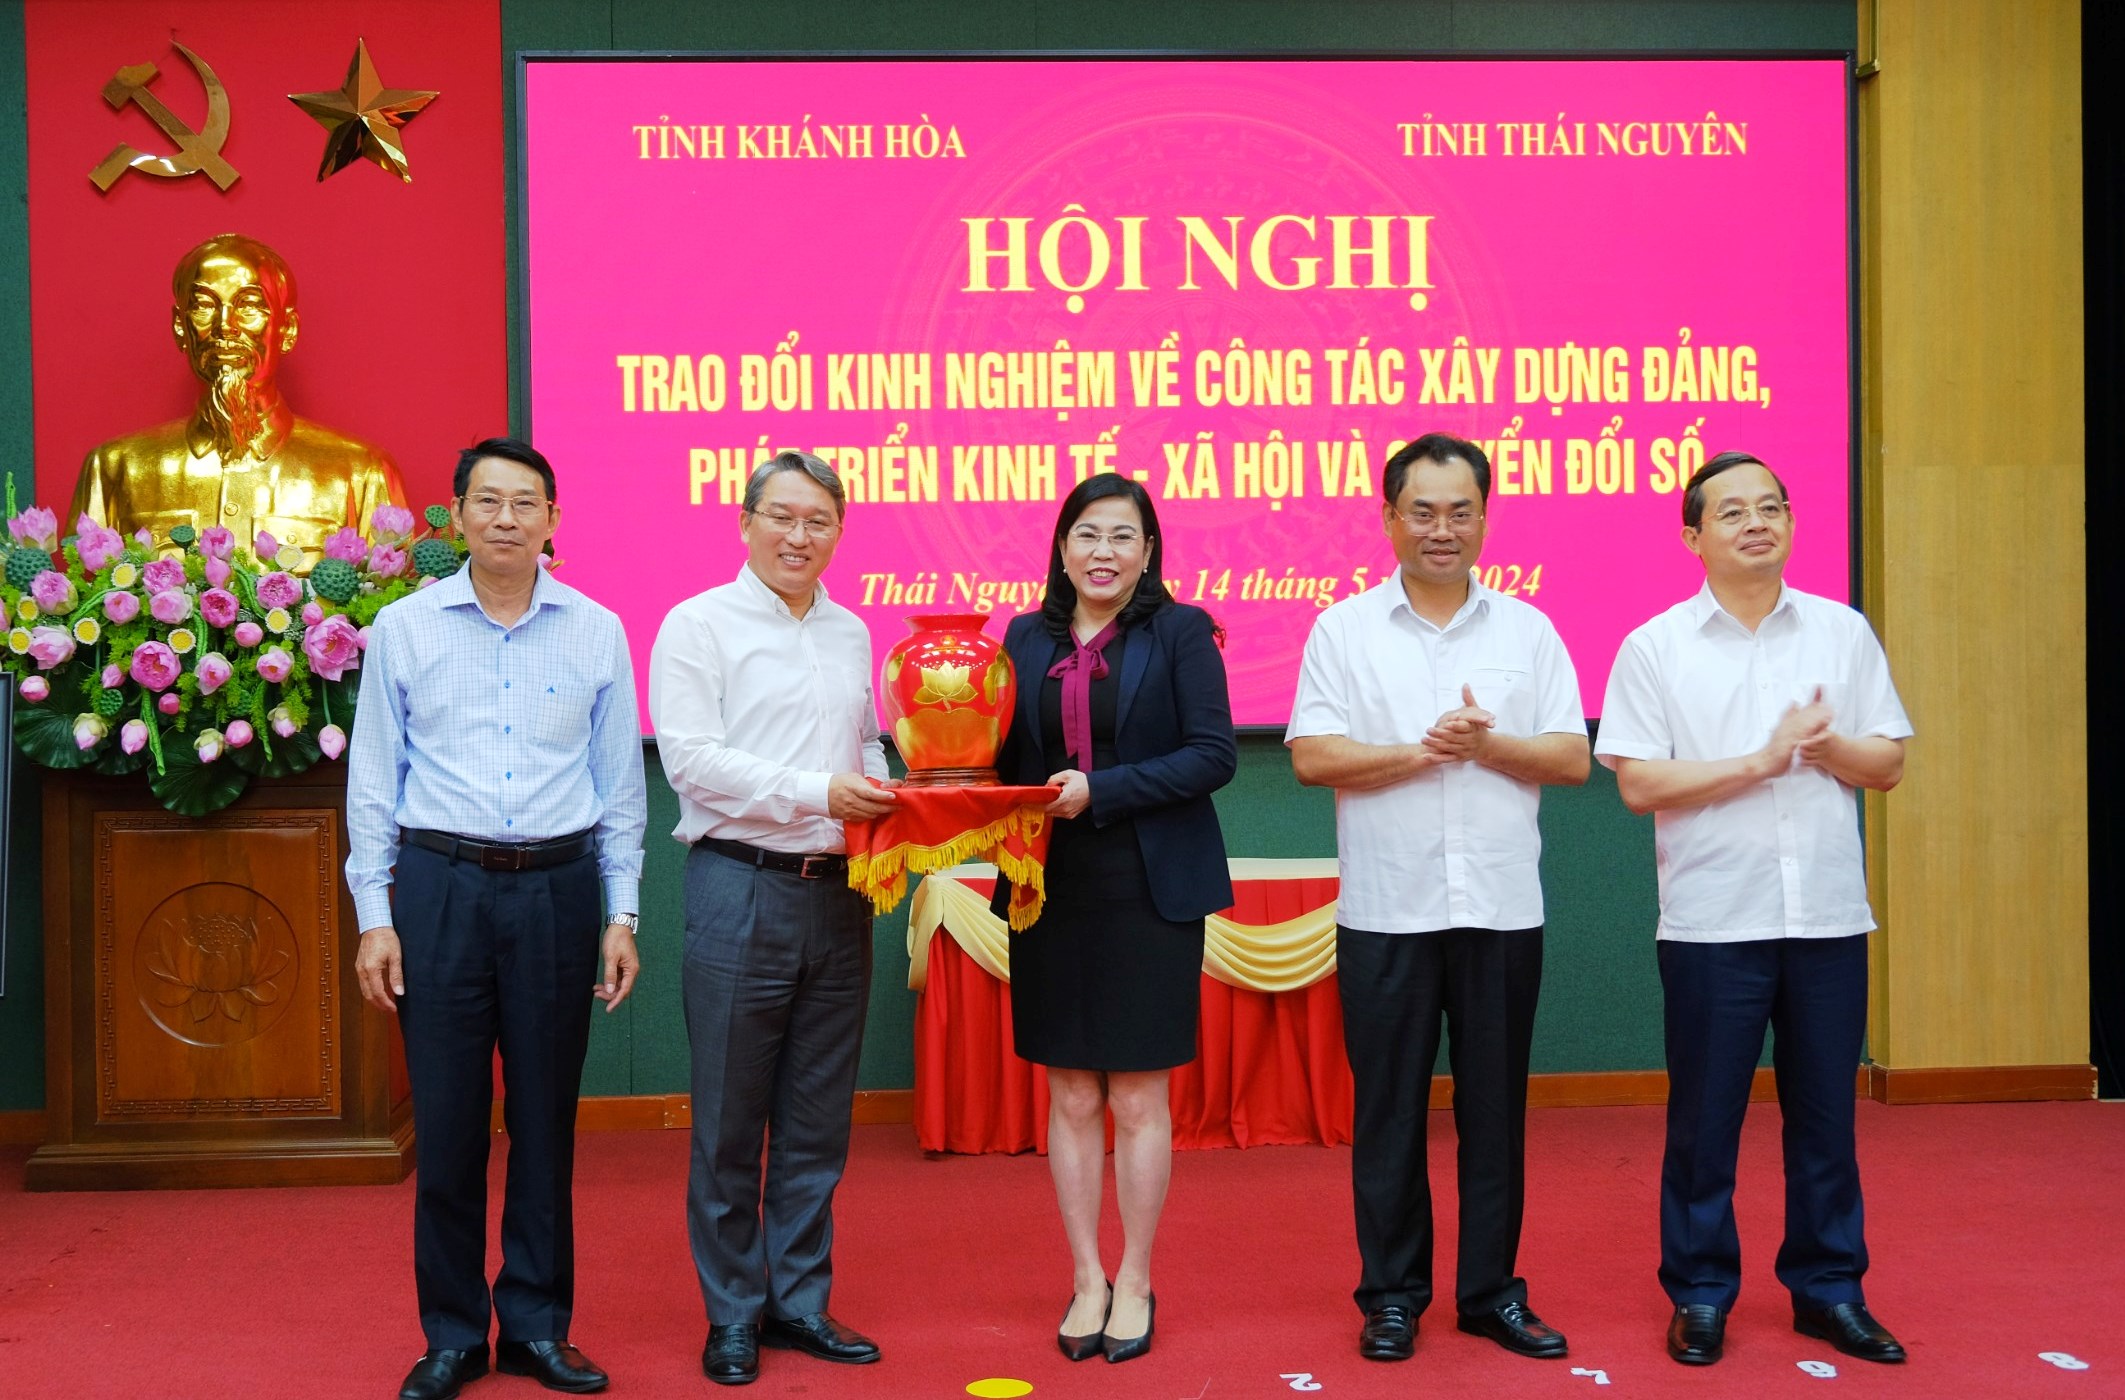 Tăng cường trao đổi, hợp tác giữa 2 tỉnh kết nghĩa Thái Nguyên - Khánh Hoà